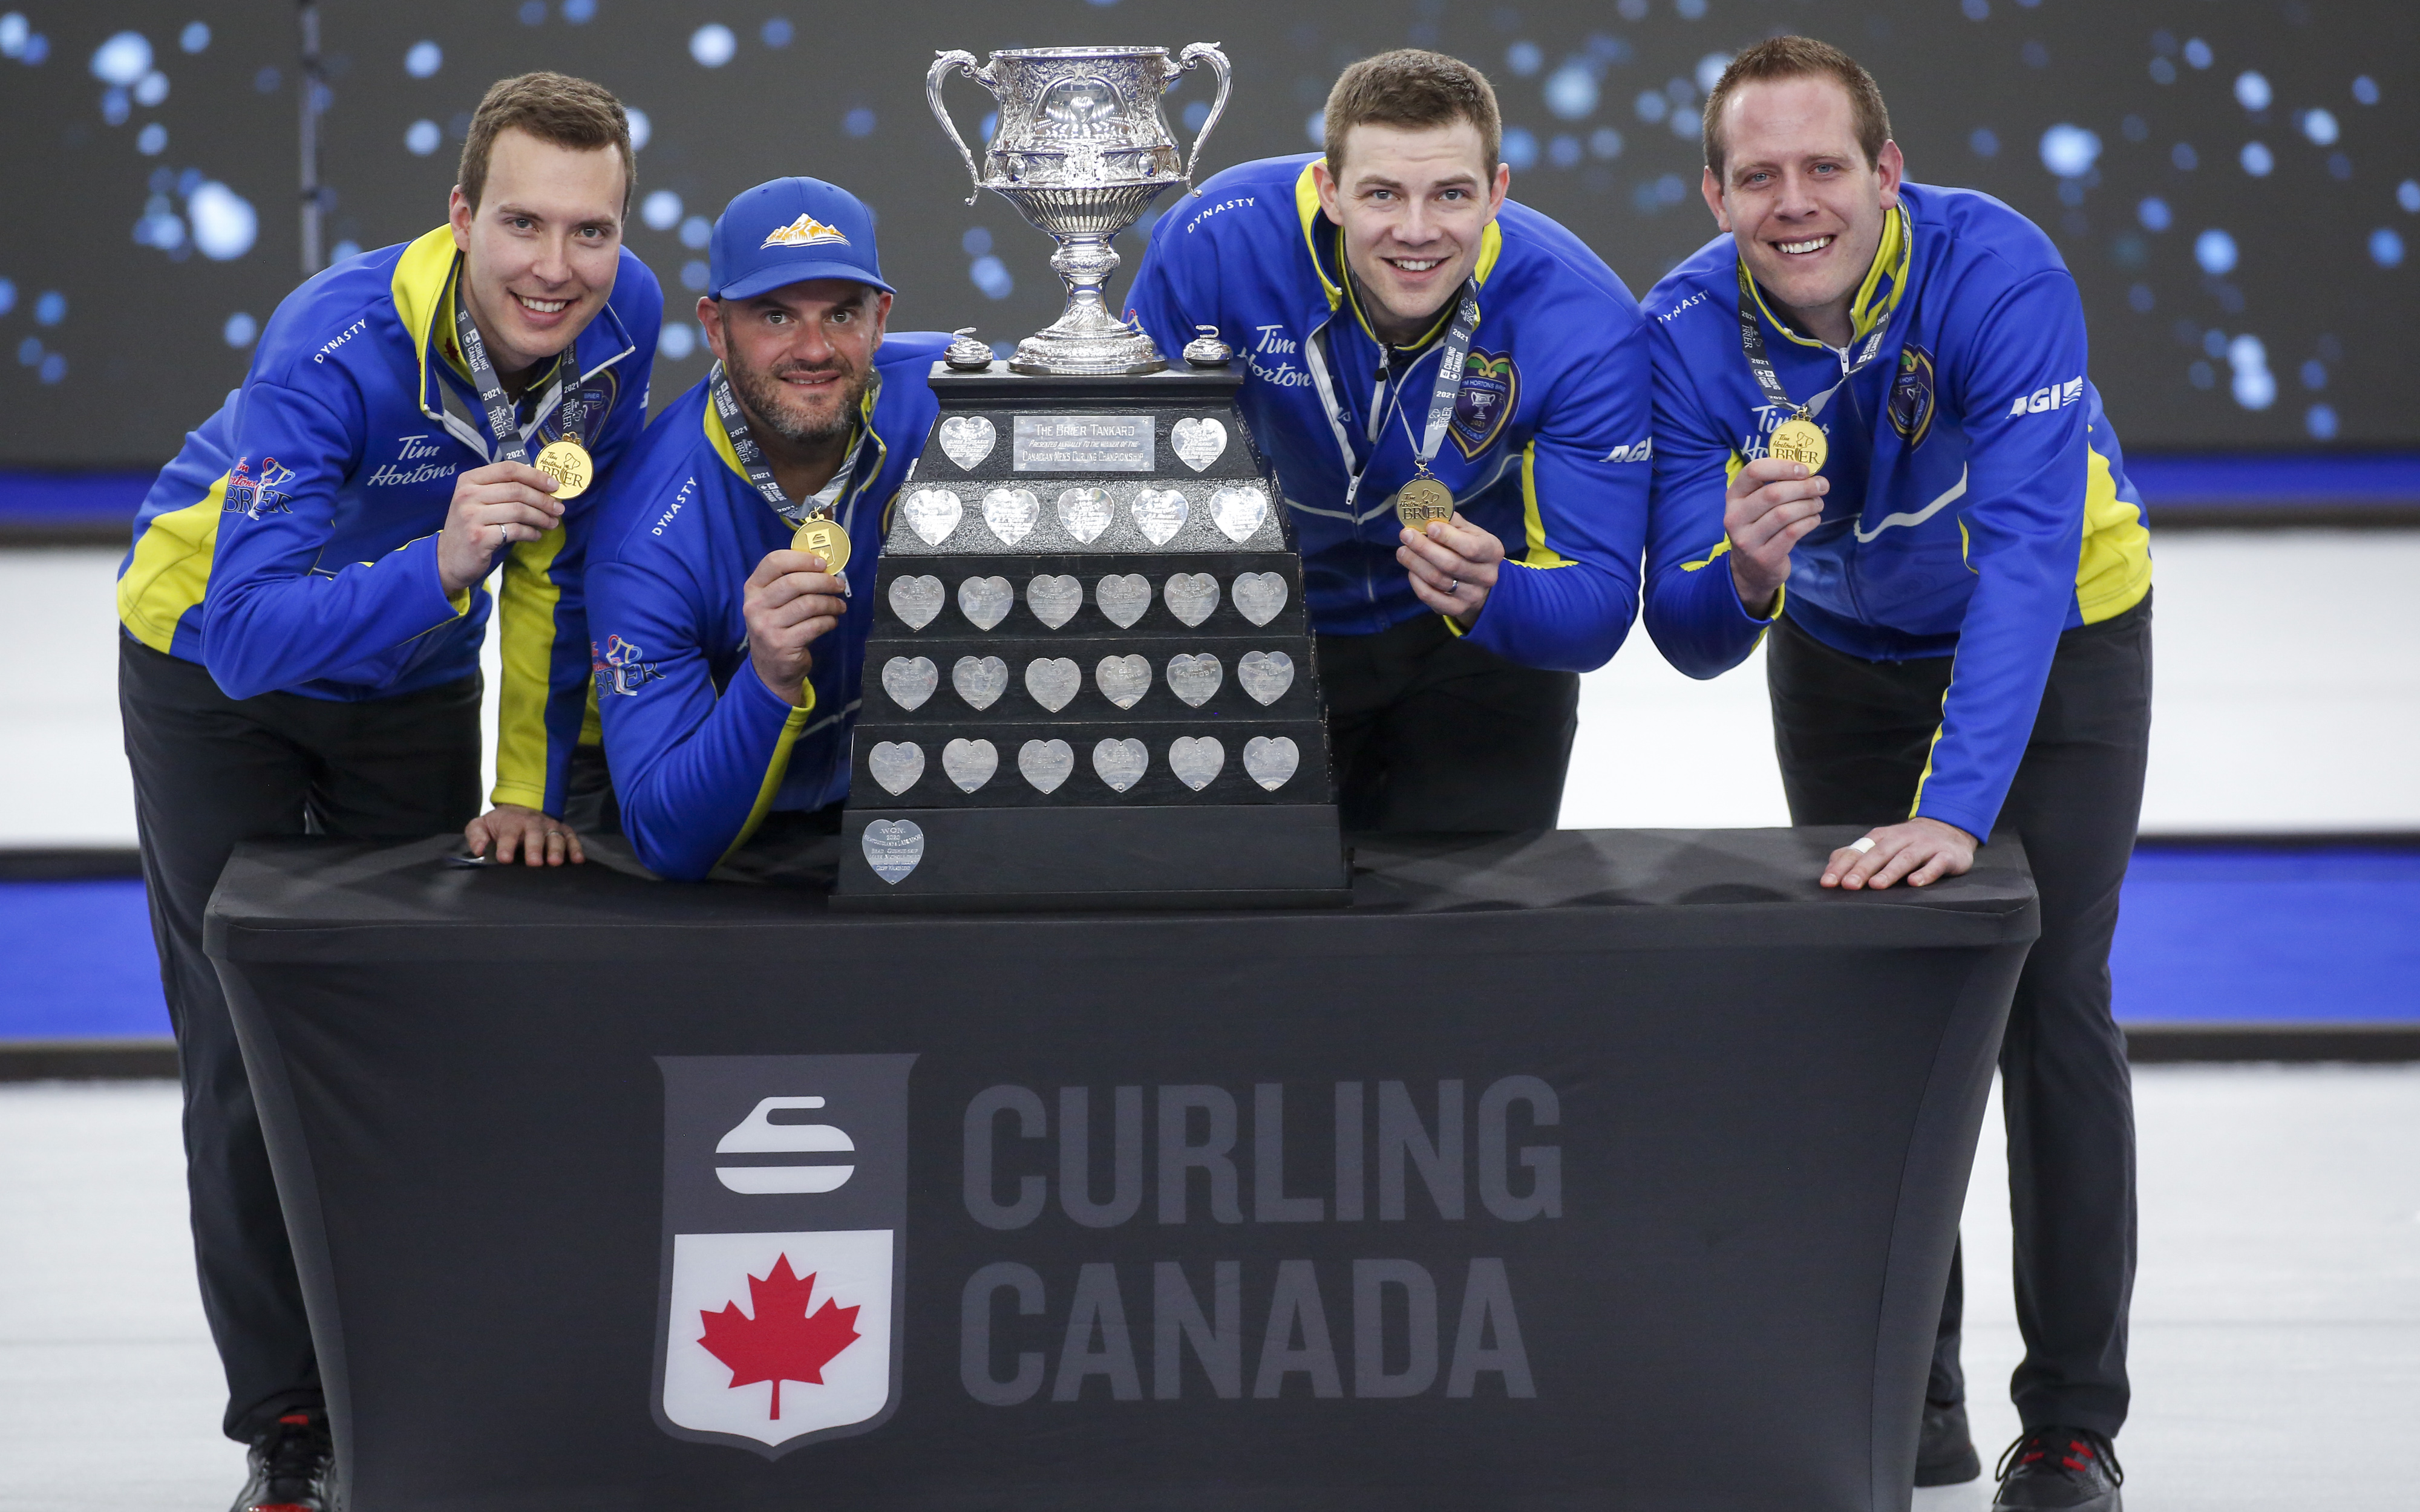 echipa Alberta, de la stânga la dreapta, săriți Brendan Bottcher, a treia turnare Darren, a doua Brad Thiessen, plumb Karrick Martin sărbători înfrângerea echipei Wild Card doi pentru a câștiga finala Brier curling în Calgary, Alta., Duminică, 14 Martie 2021.